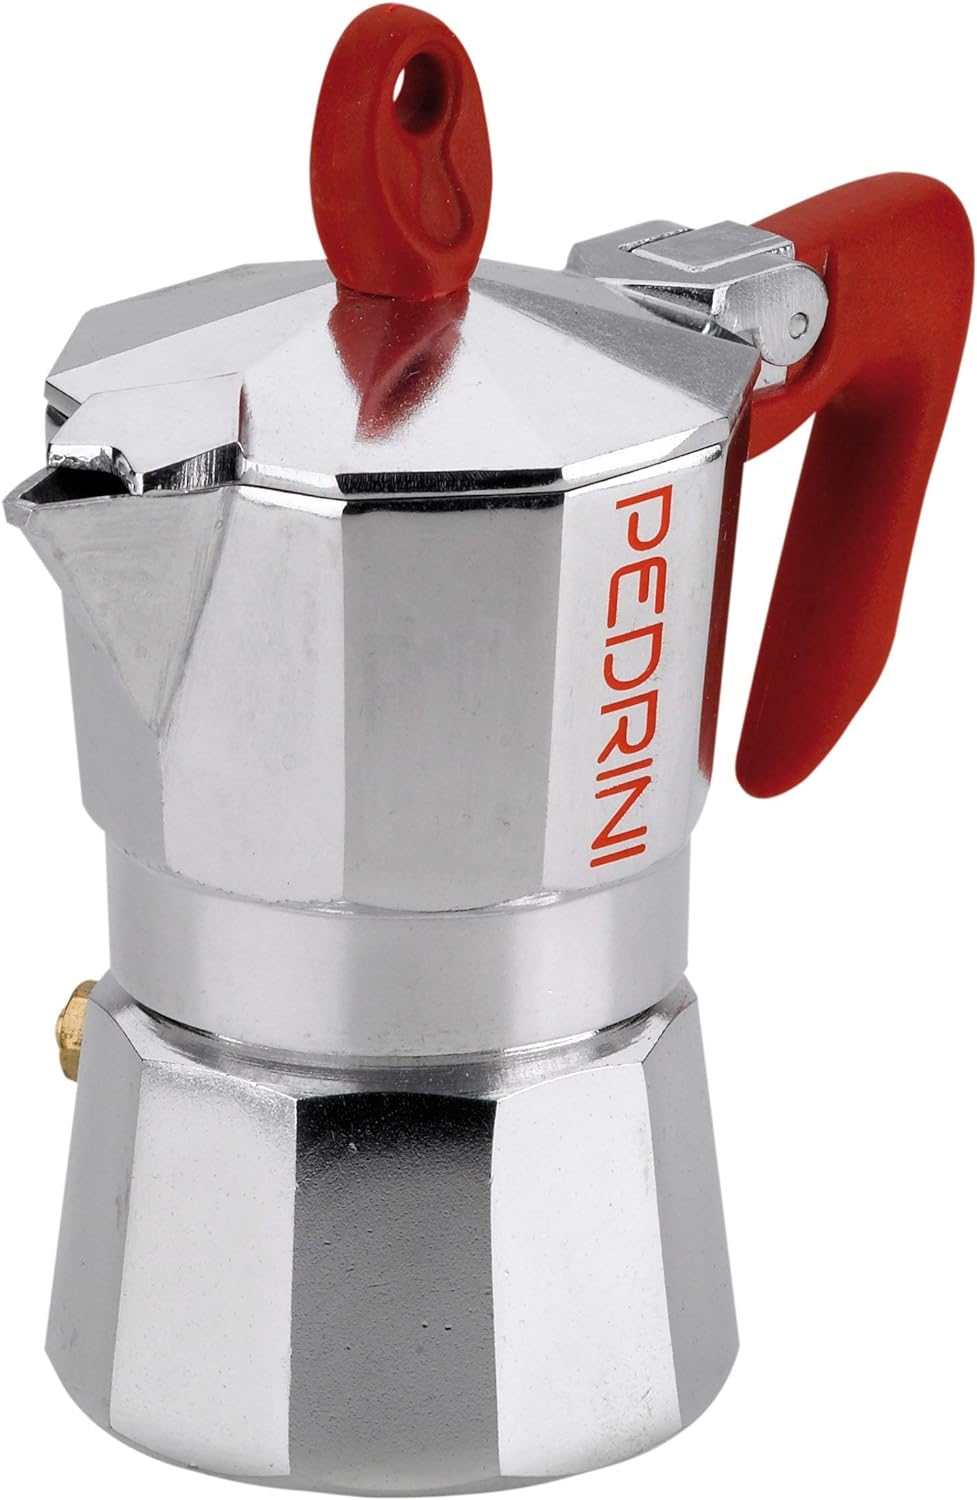 Pedrini Kaffettiera 9081 Espresso Maker 2 Tazze Red